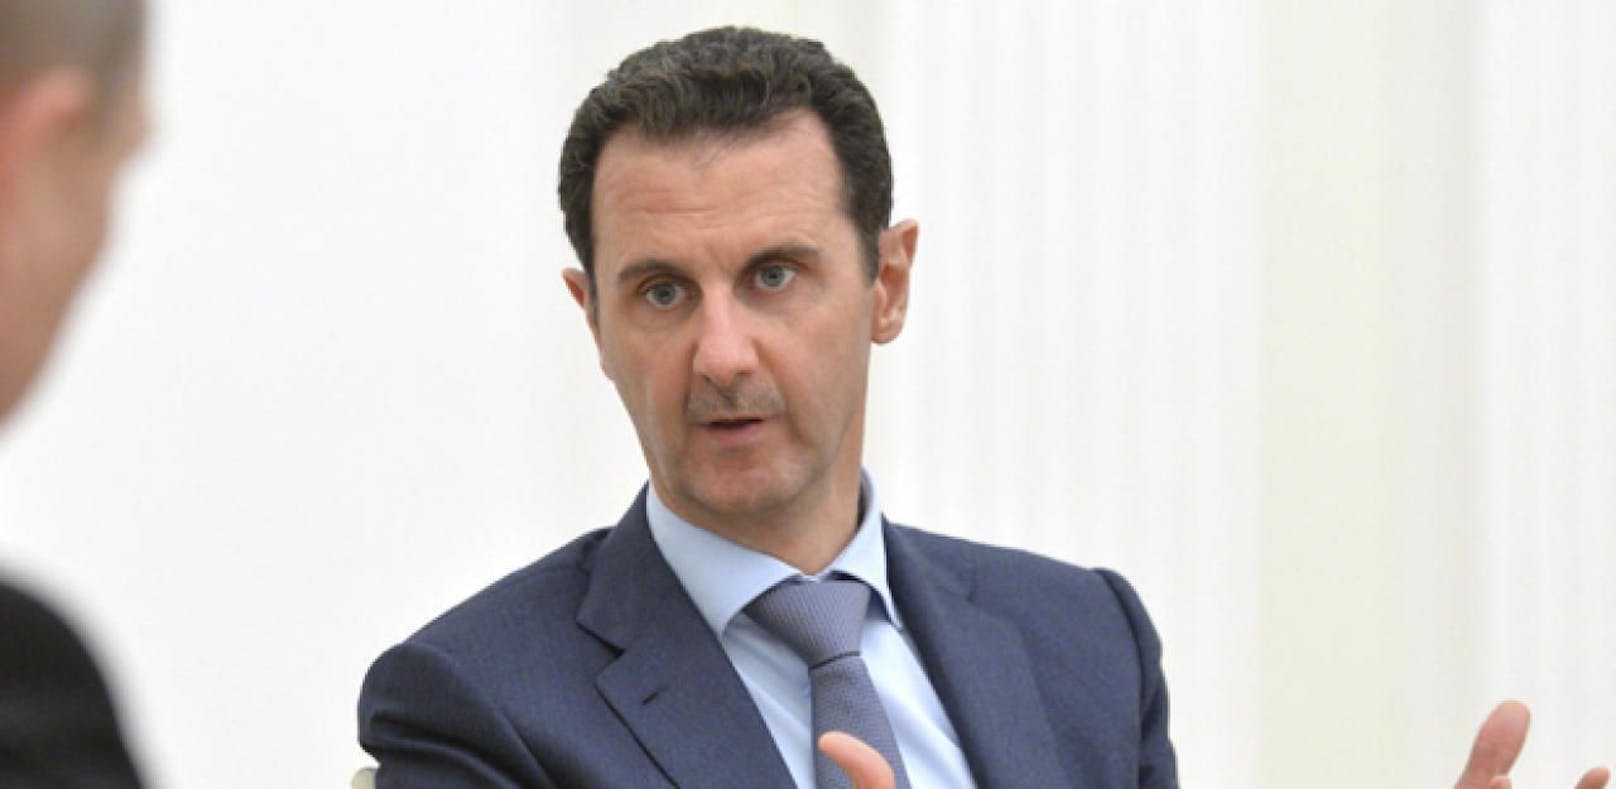 Mit ihm kein Frieden: USA wollen Assad loswerden